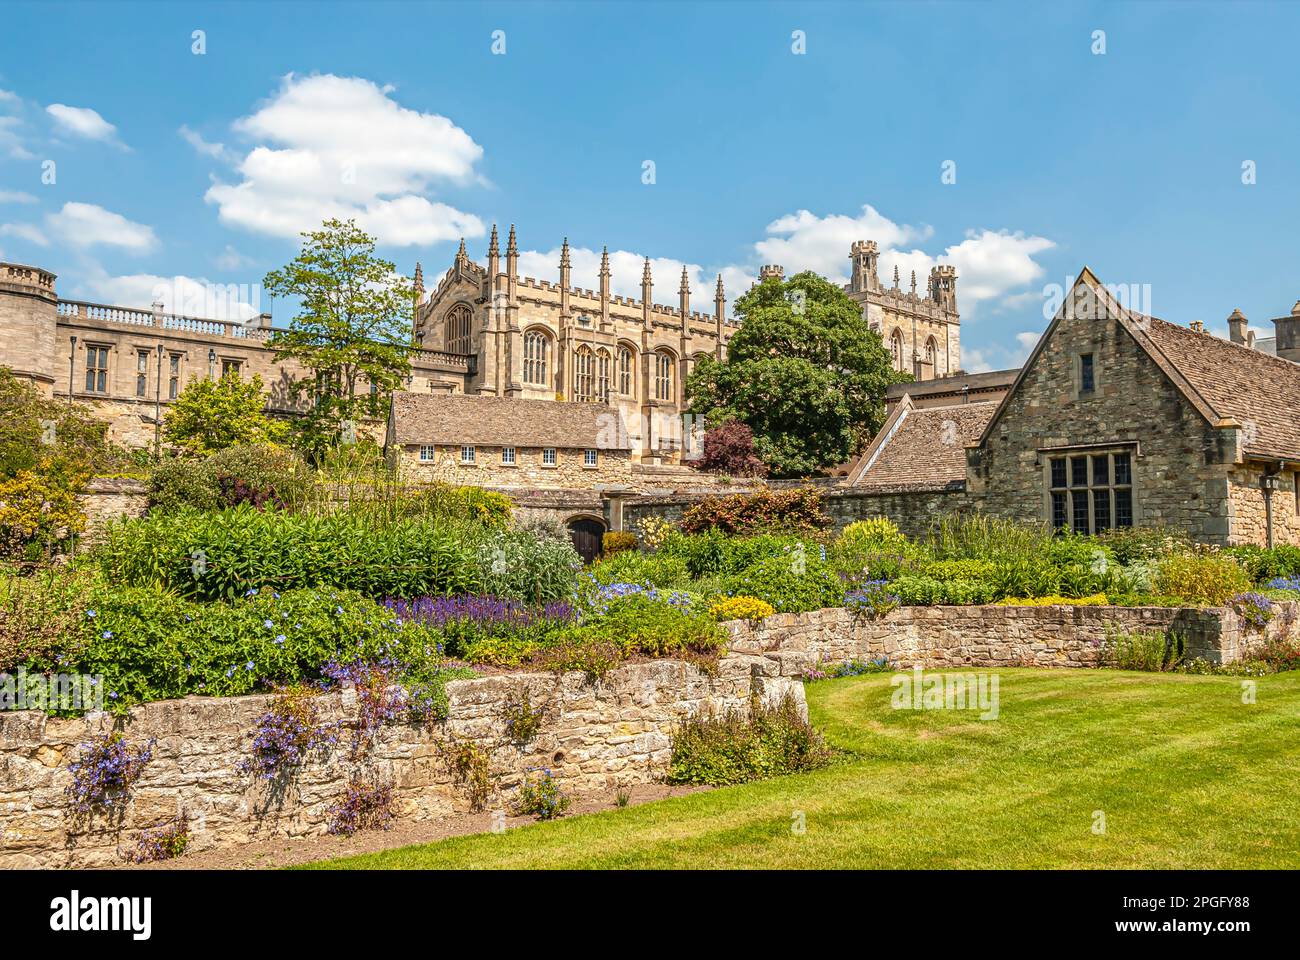 Jardin fleuri de la cathédrale Christ Church d'Oxford, Oxfordshire, Angleterre, Royaume-Uni Banque D'Images